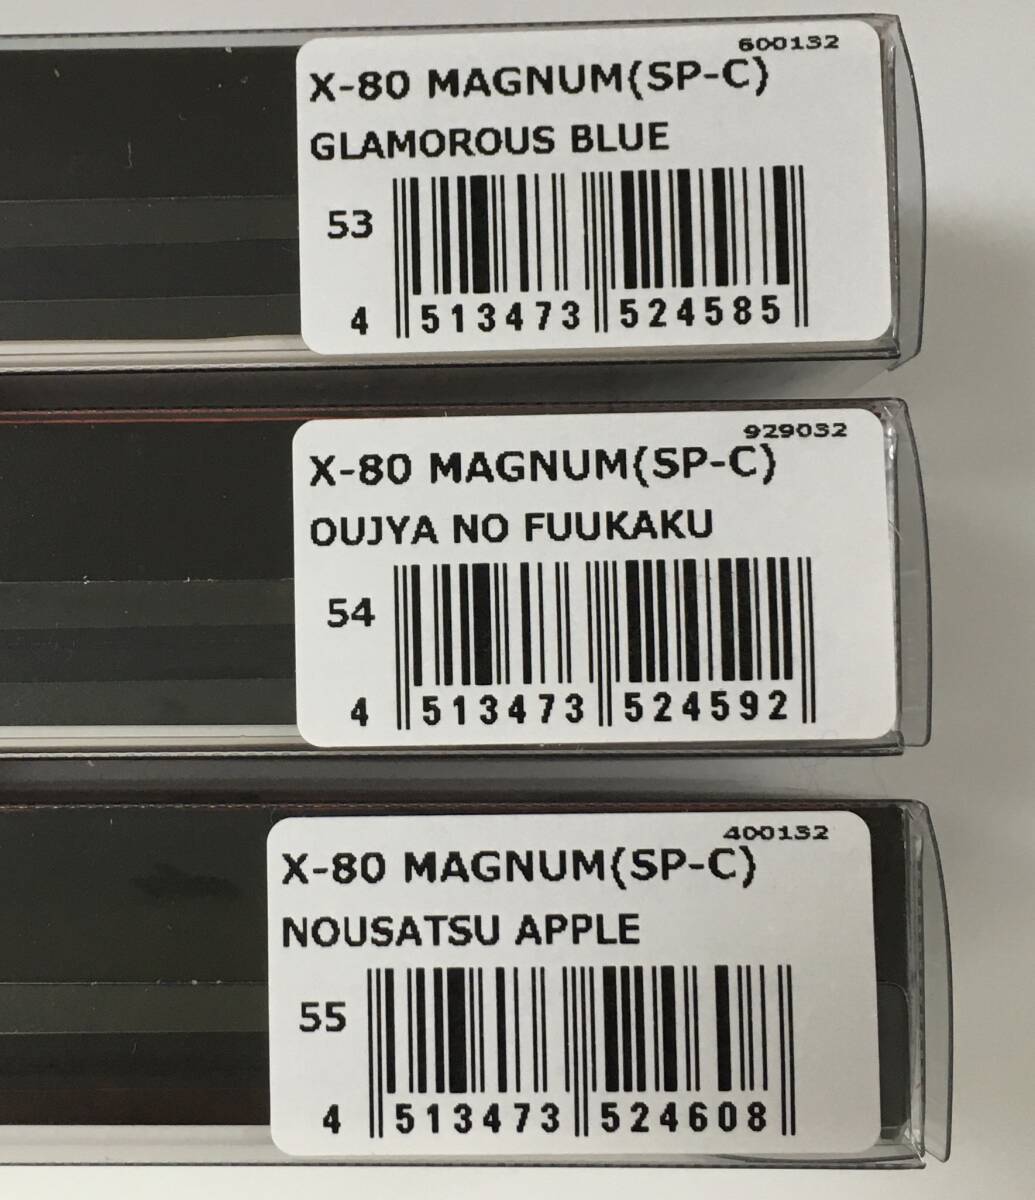 新品 X-80 マグナム 東北限定カラー 3色フルセット 王者の風格 悩殺アップル グラマラスブルー メガバス X80 MAGNUM megabass sp-cの画像2